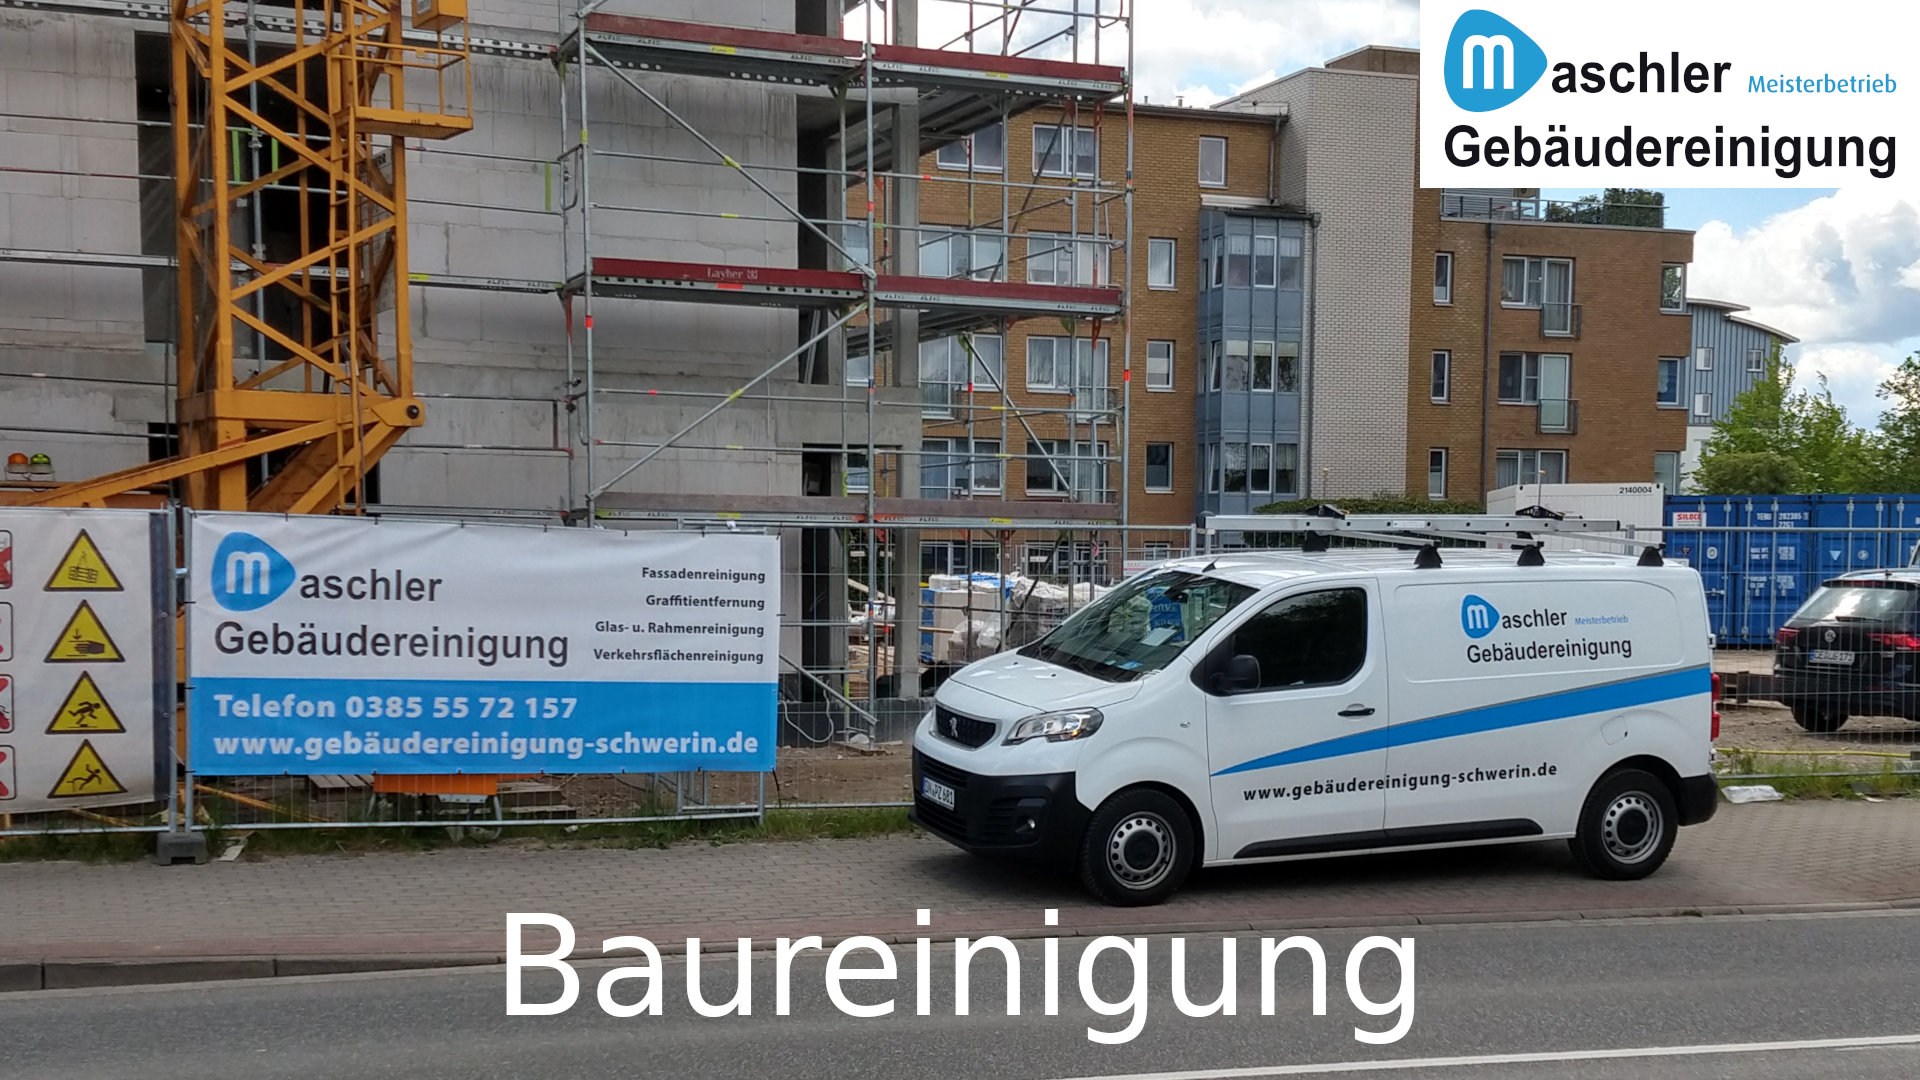 Baureinigung - Gebäudereinigung Maschler Neubrandenburg